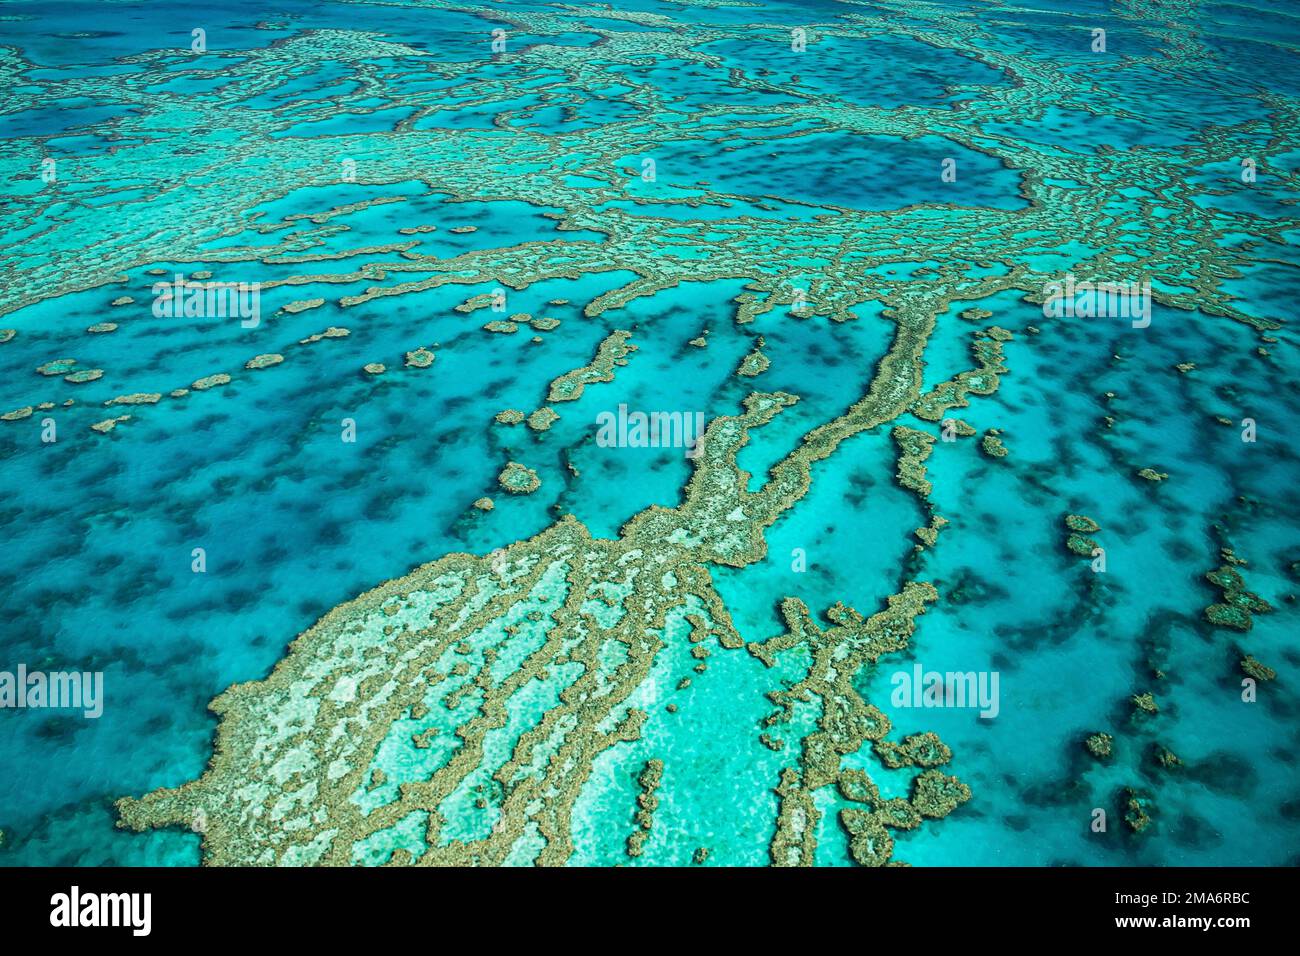 Vista aerea, barriere coralline e atolli della Grande barriera Corallina, Queensland, Australia Foto Stock